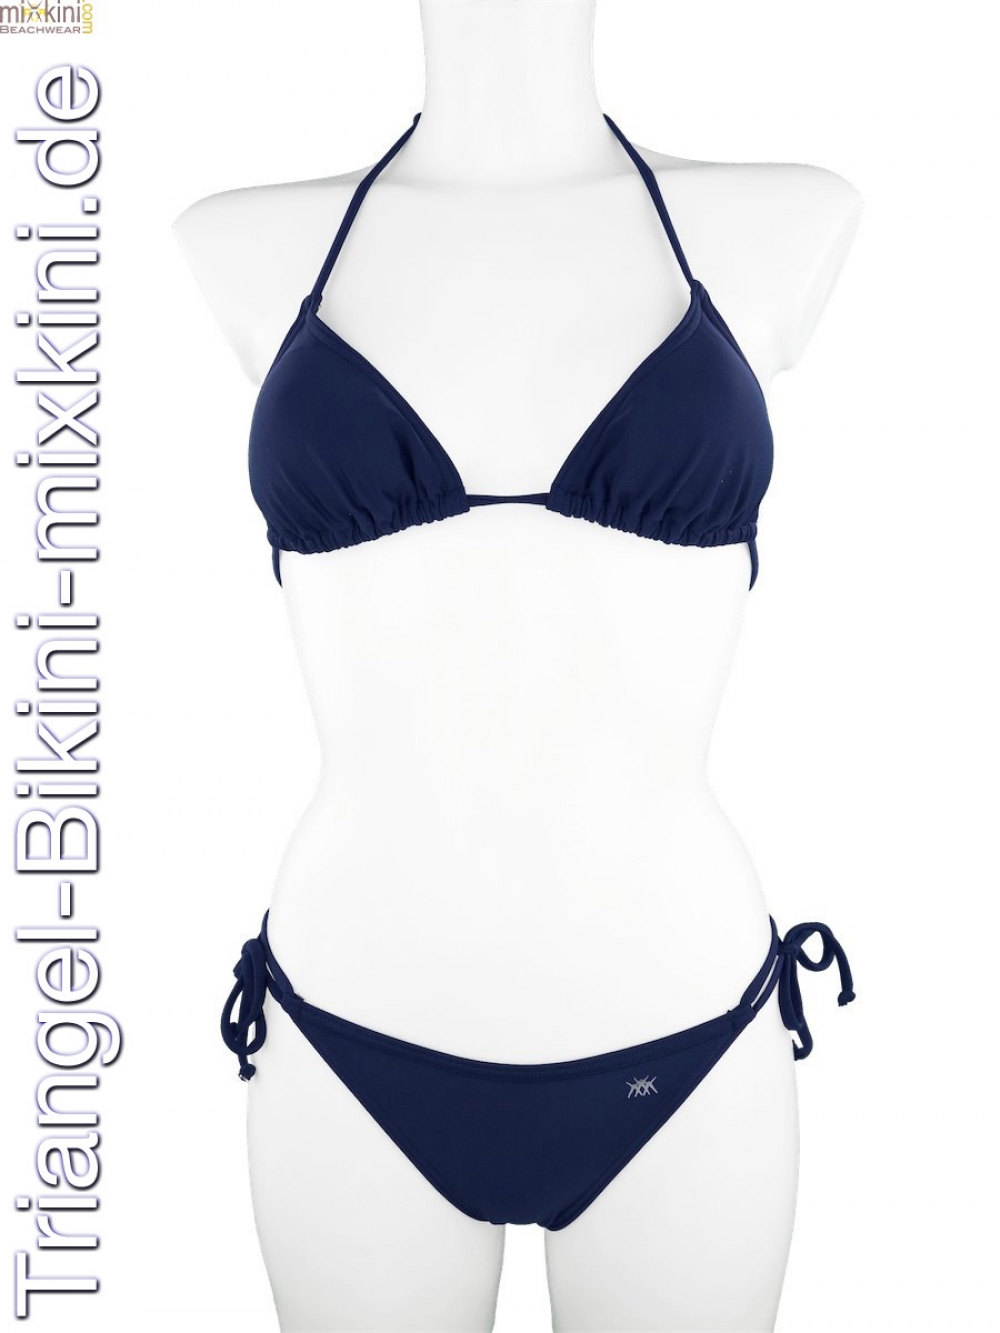 triangel bikini set dunkelblau zum vorteilspreis - mixkini beachwear